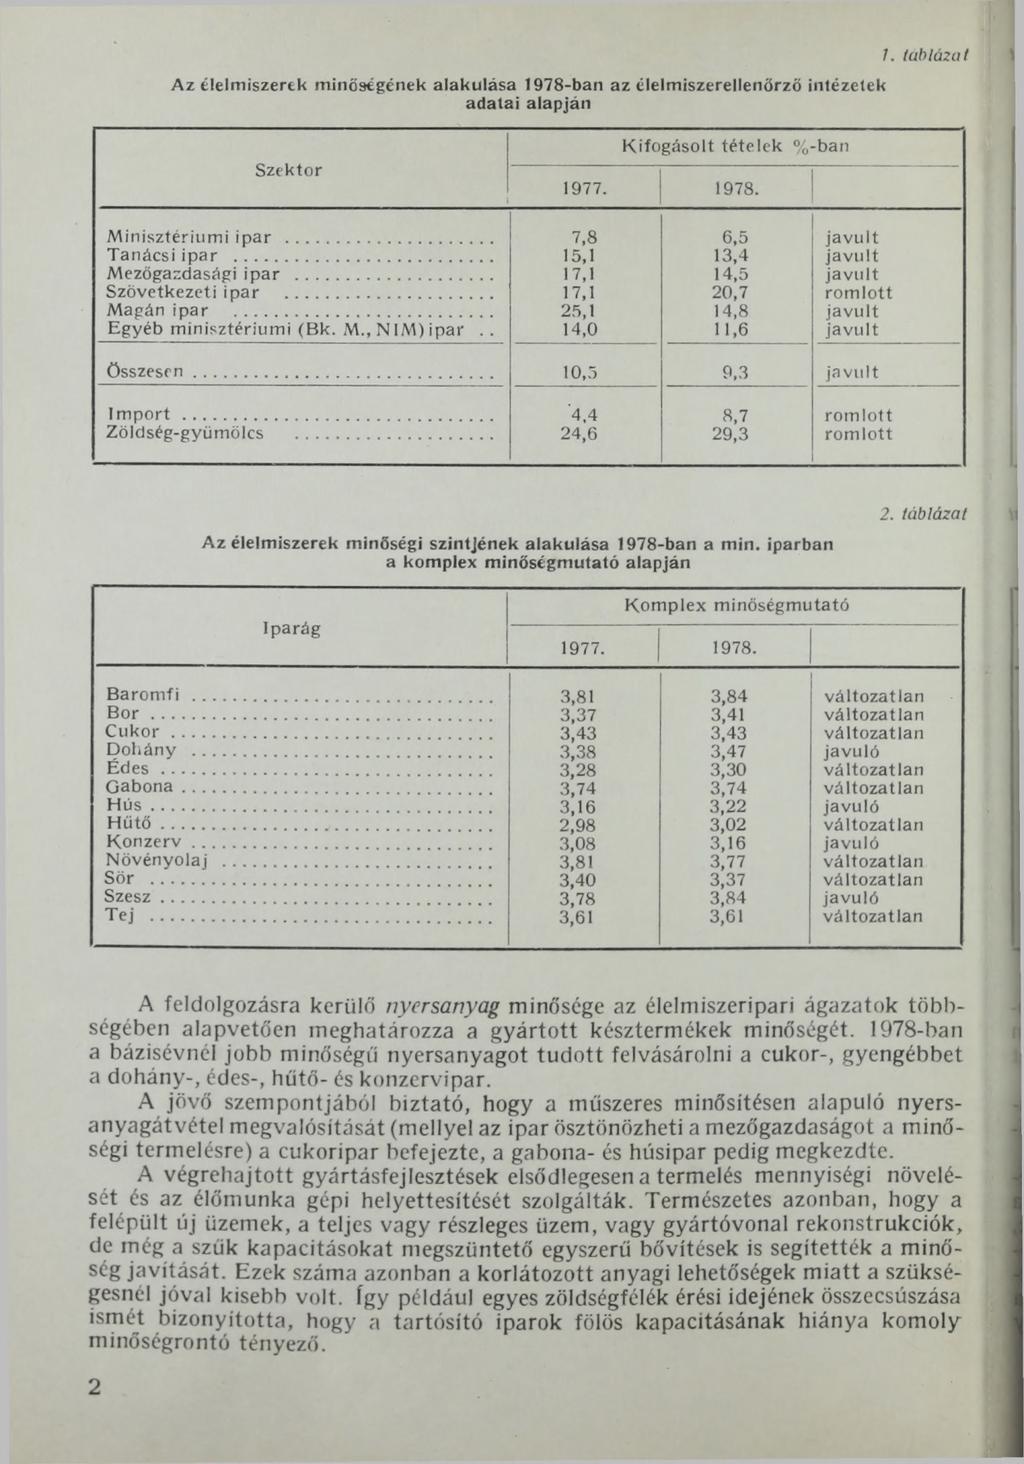 Az élelmiszerek minőségének alakulása 1978-ban az élelmiszerellenőrző intézetek adatai alapján 1. táblázat Szektor Kifogásolt tételek % ban 1977. 1978. Minisztériumi ipar... 7,8 6,5 javult Tanácsi ipar.